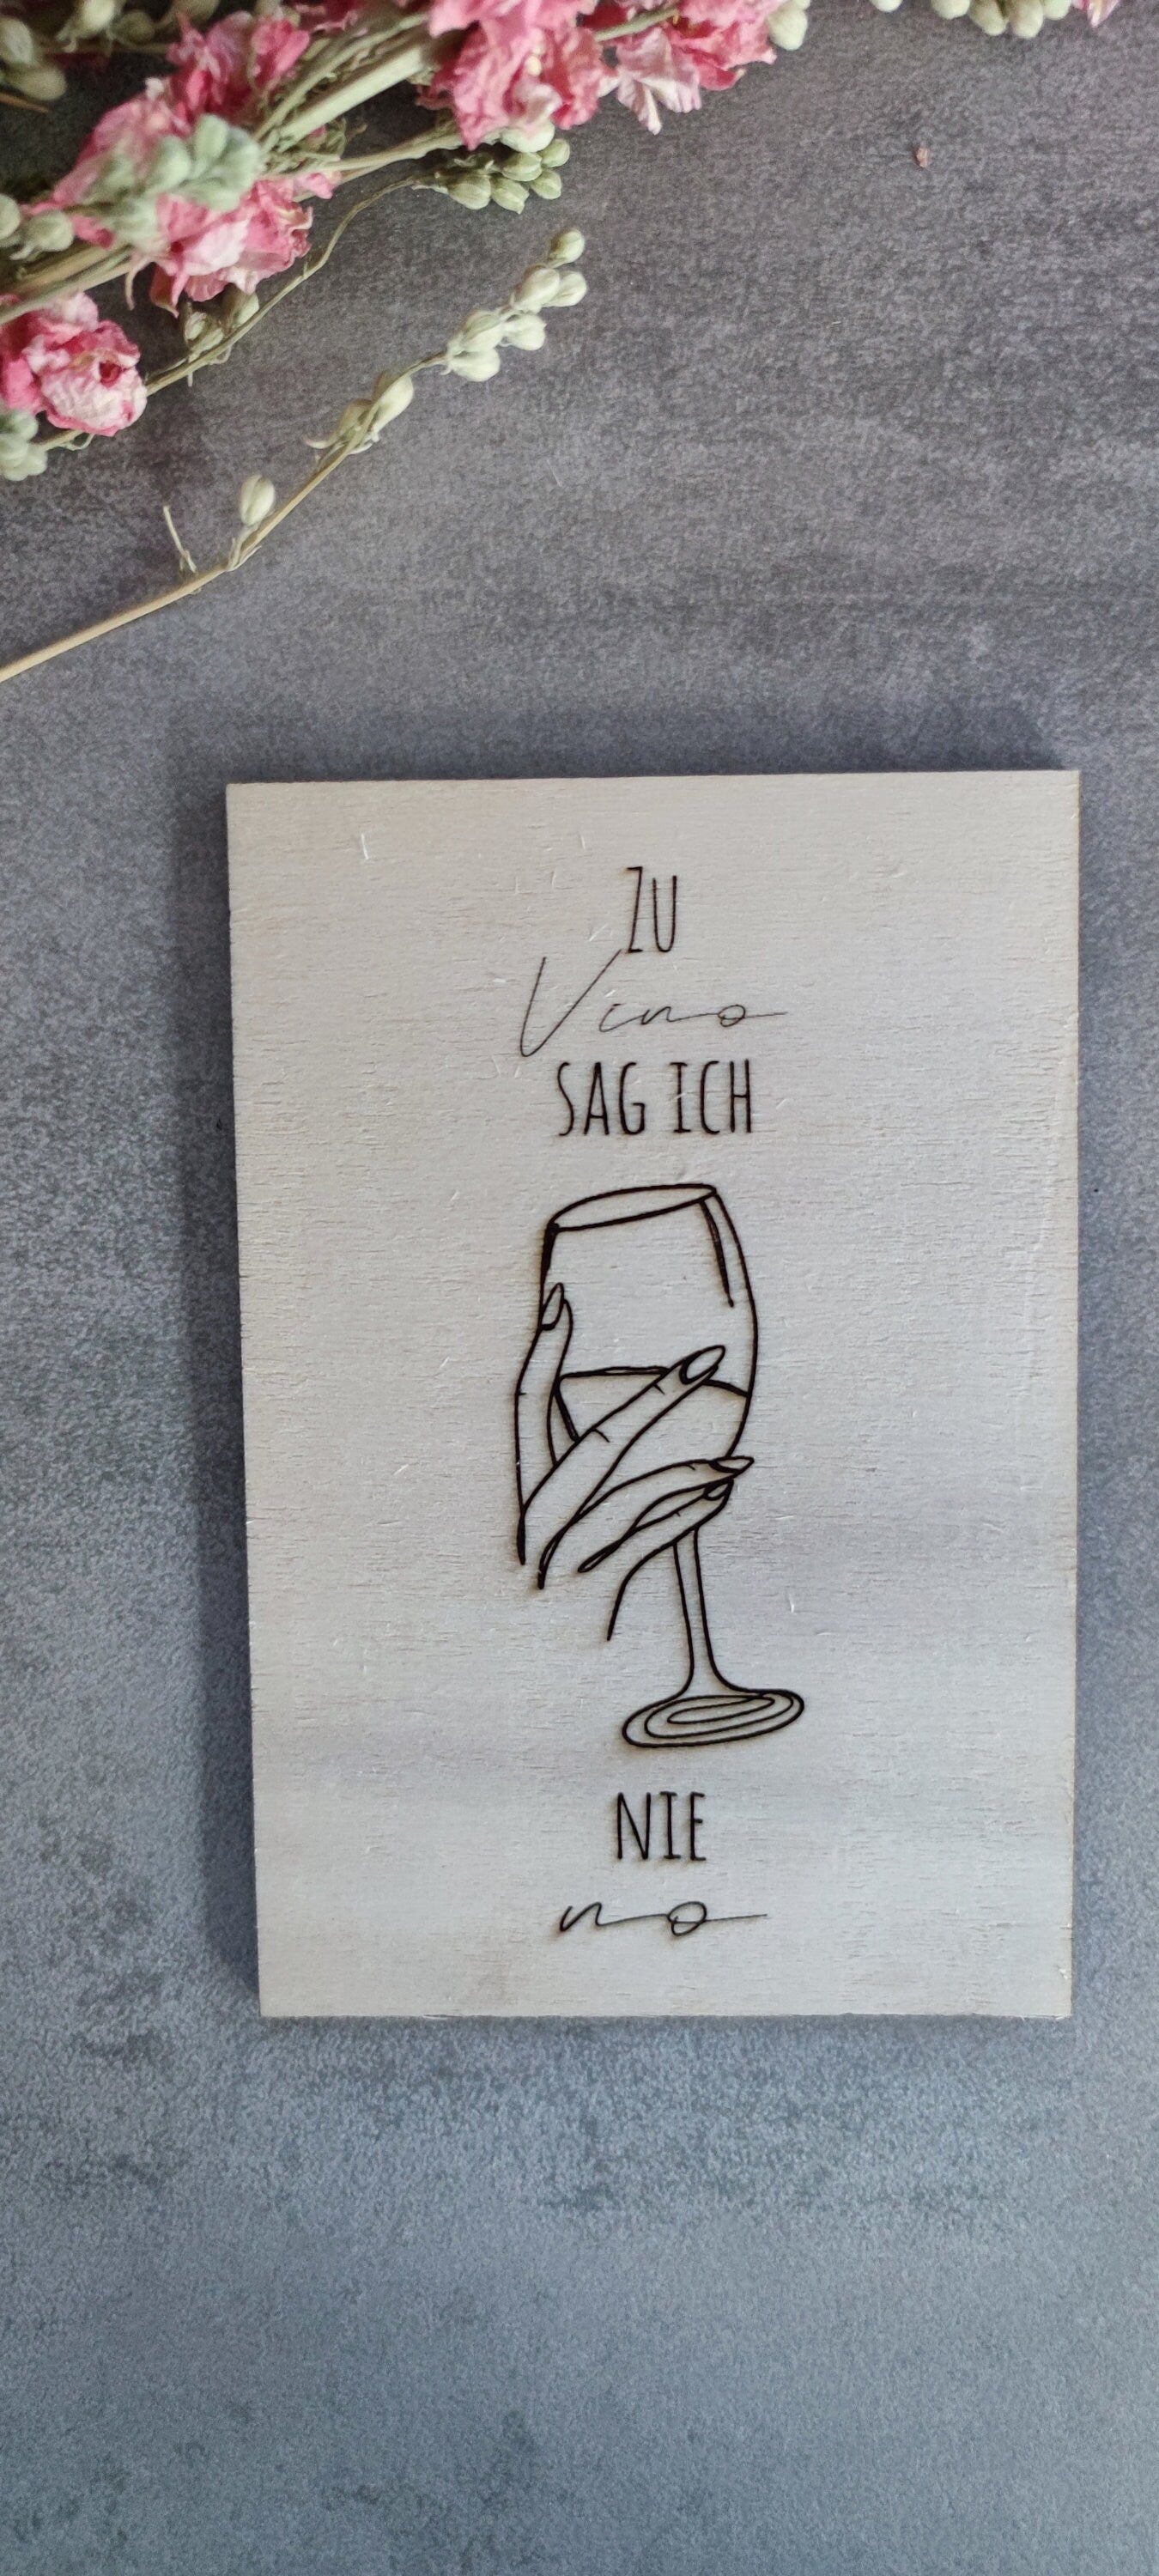 Image en bois « Je ne dis jamais non au vin »/image en bois/image avec dicton/dicton de vin/dictons de vin/image avec dicton de vin